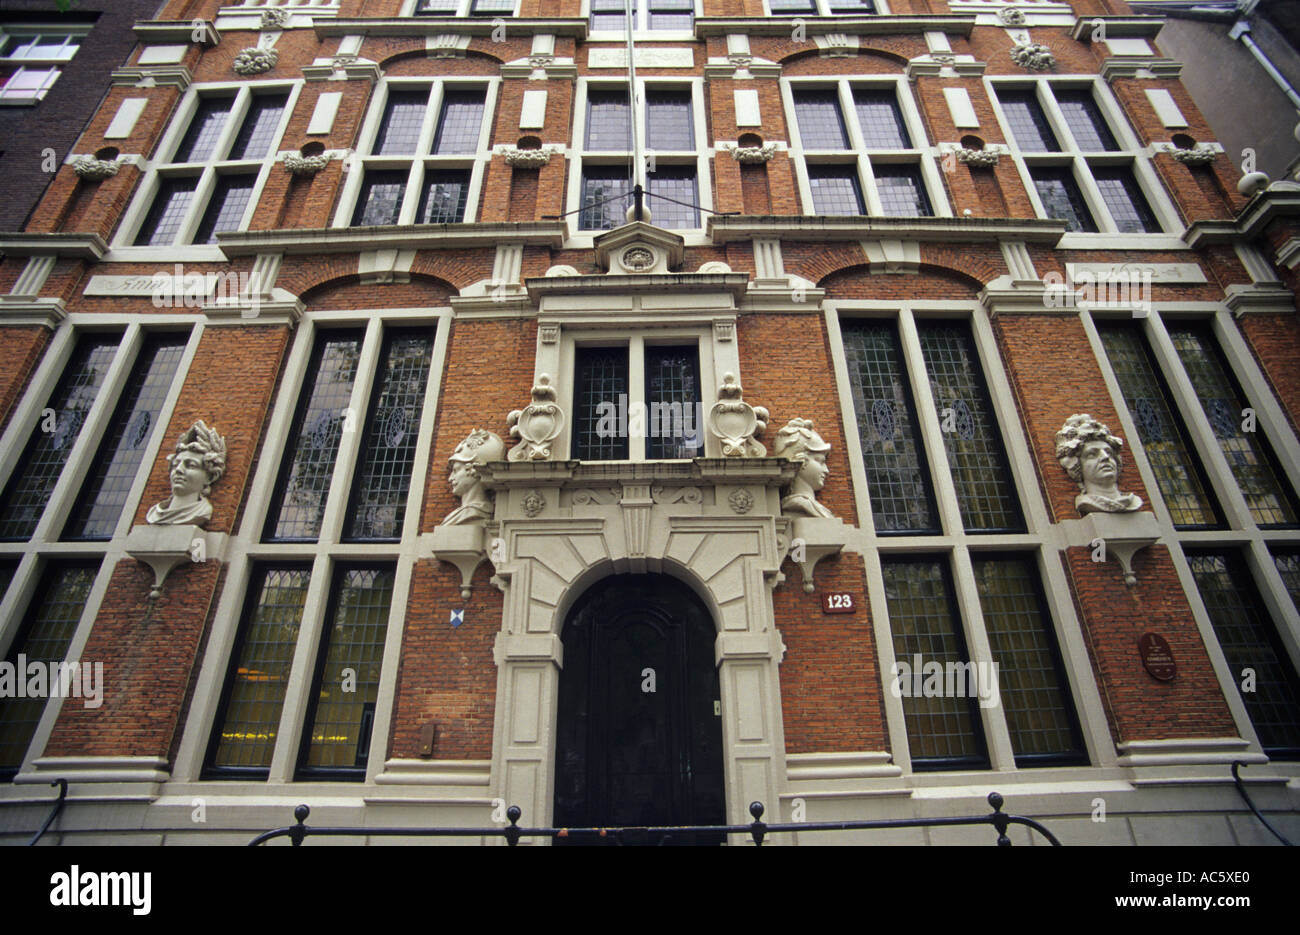 Architektur von Amsterdam - Het Huis met de Hoofden (Haus mit den Köpfen), Niederlande Stockfoto